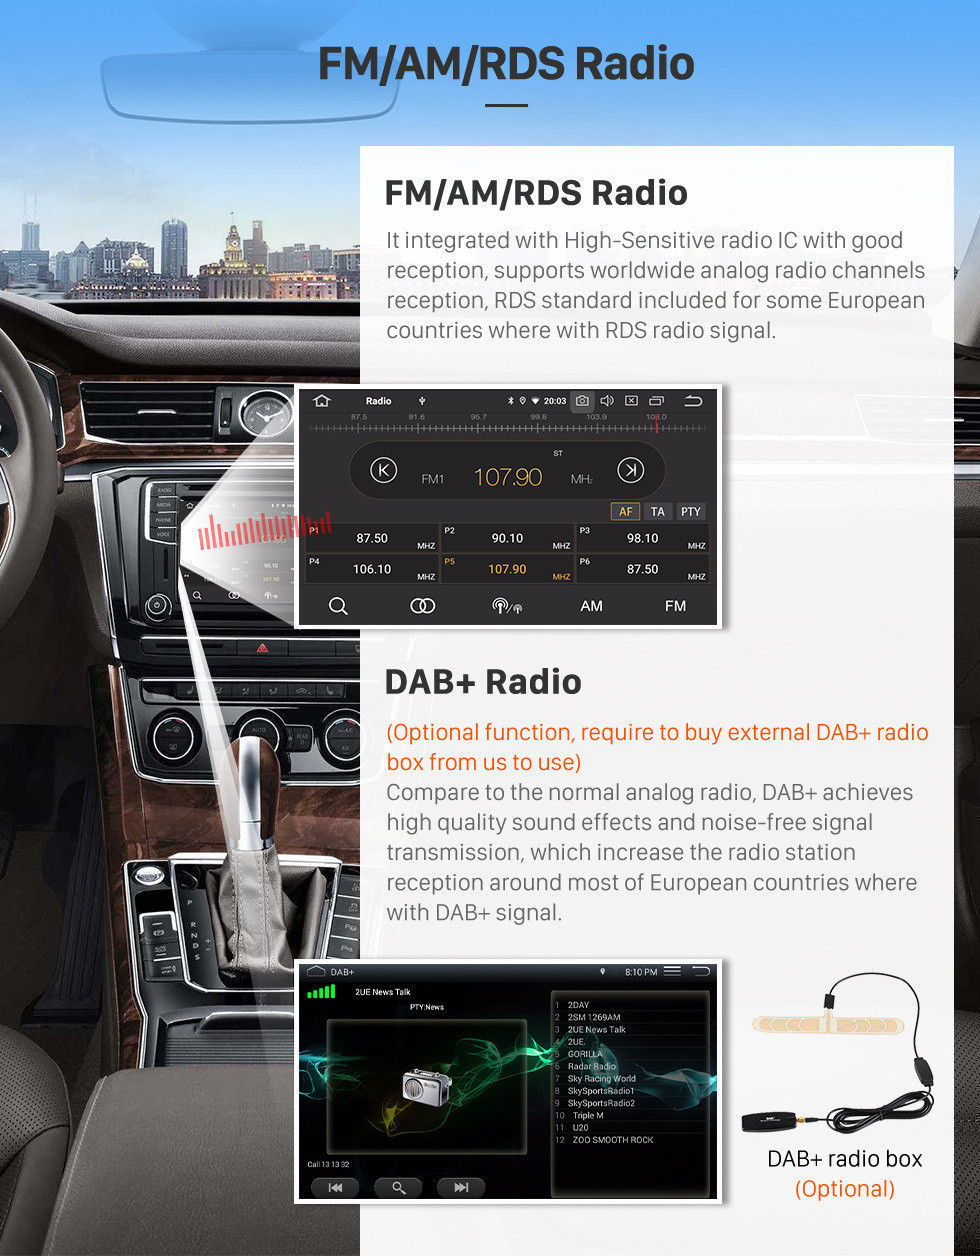 Seicane OEM 10,1 polegadas Android 11.0 para 2006-2014 Toyota Sequoia Radio Sistema de Navegação GPS com HD Touch Screen com Bluetooth WiFi Carplay Suporte Câmera de backup